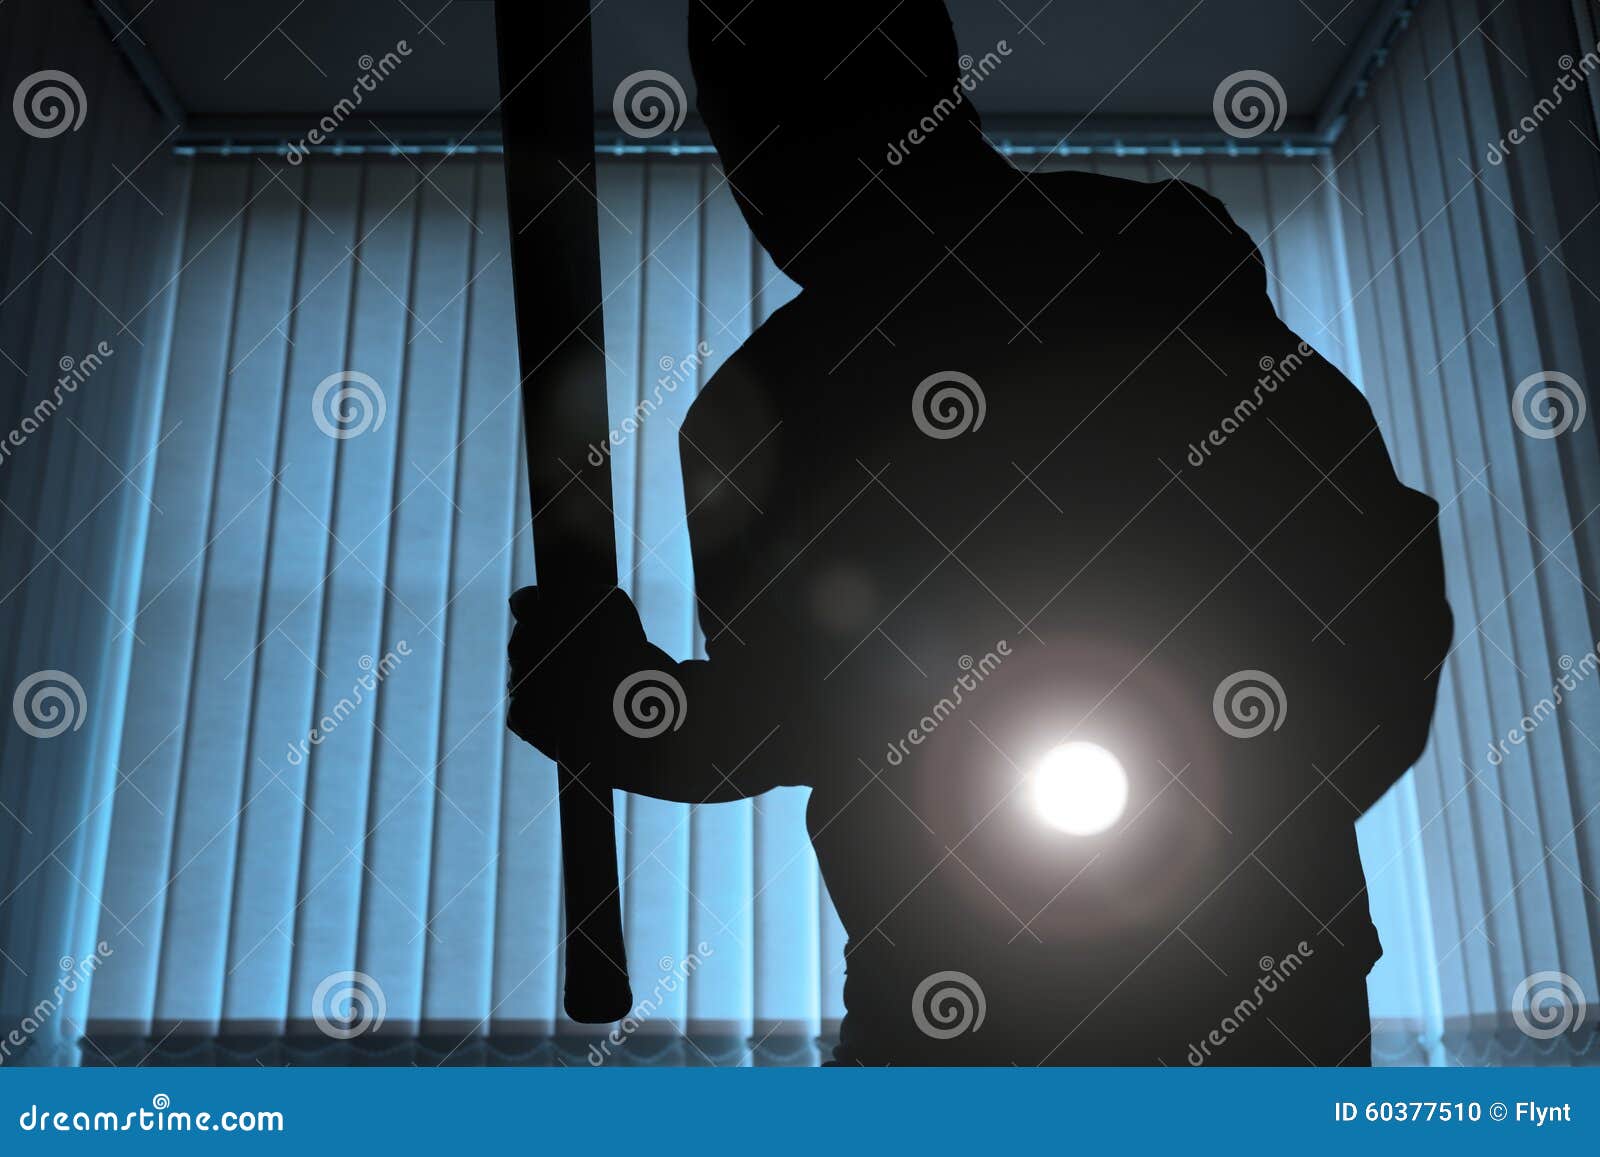 burglar or intruder at night